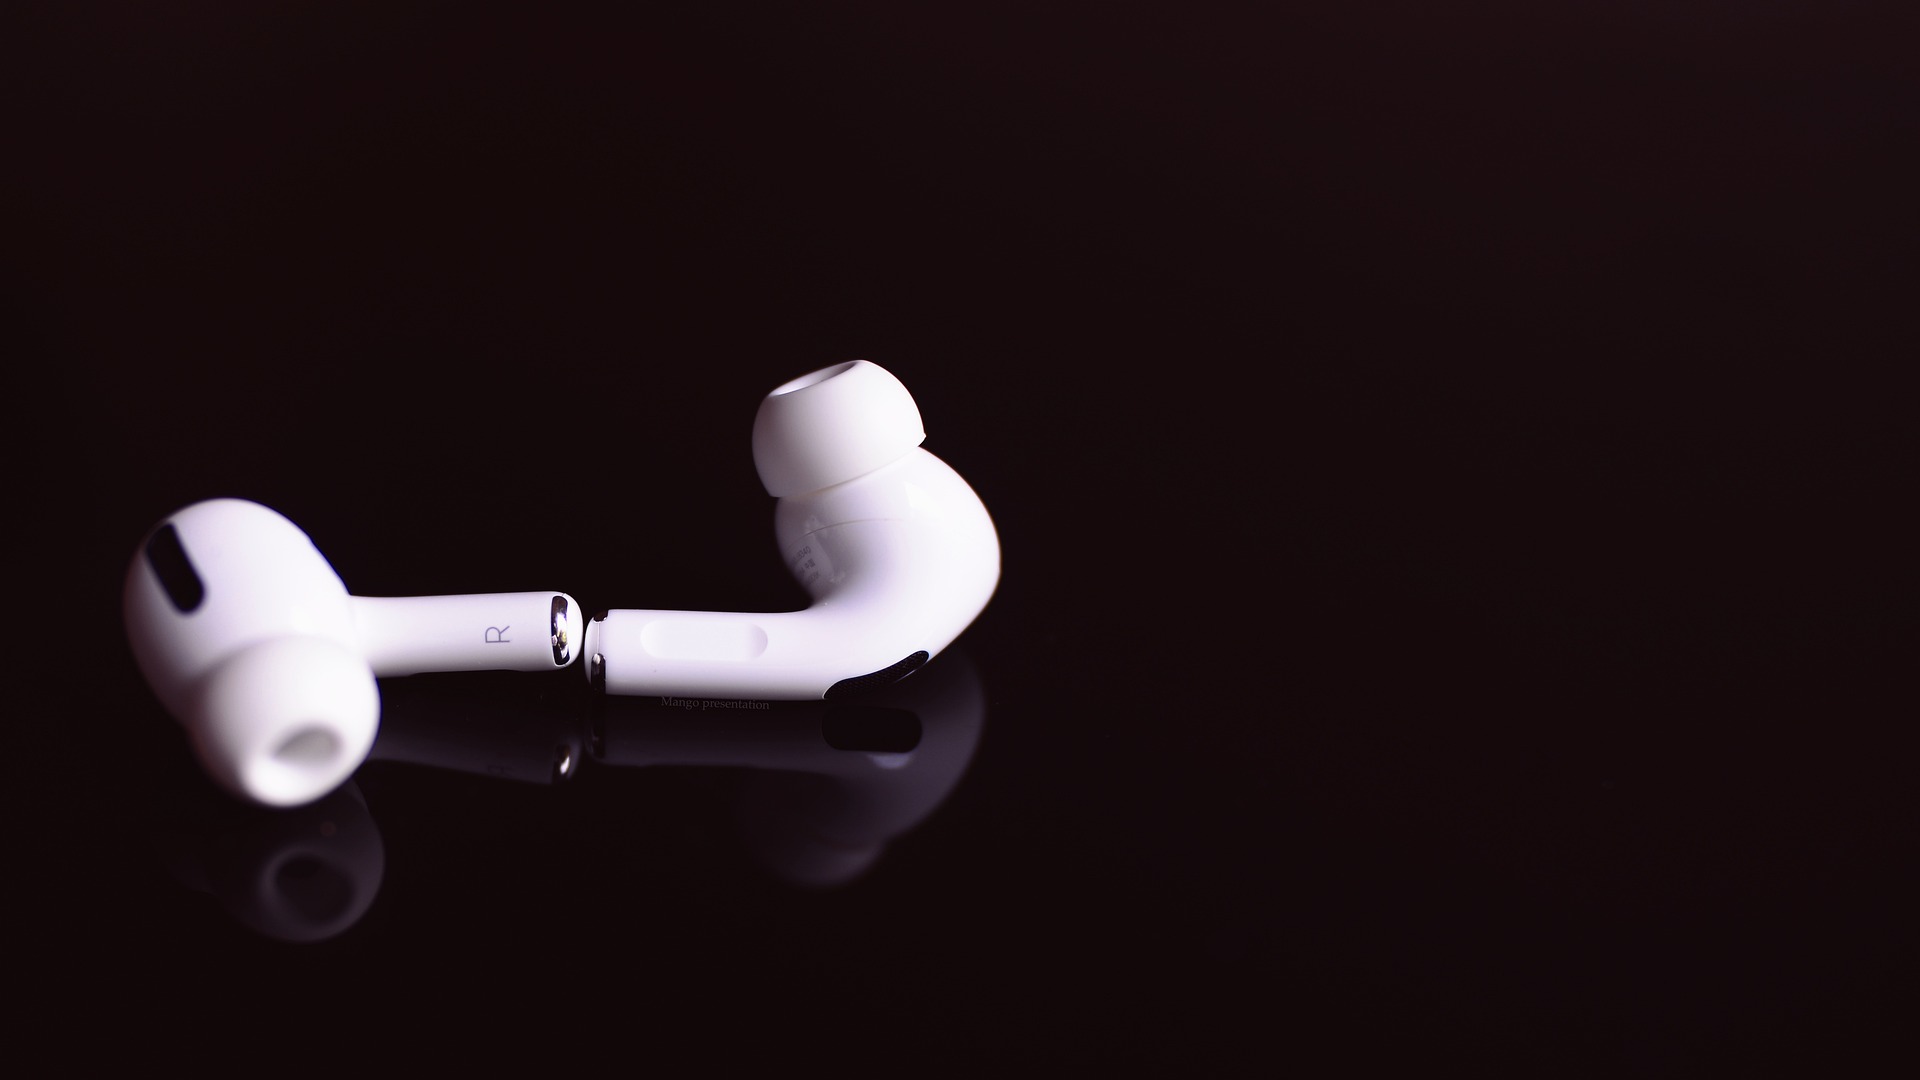 Imagem com um fone de ouvido intra auricular bluetooth branco em um fundo preto